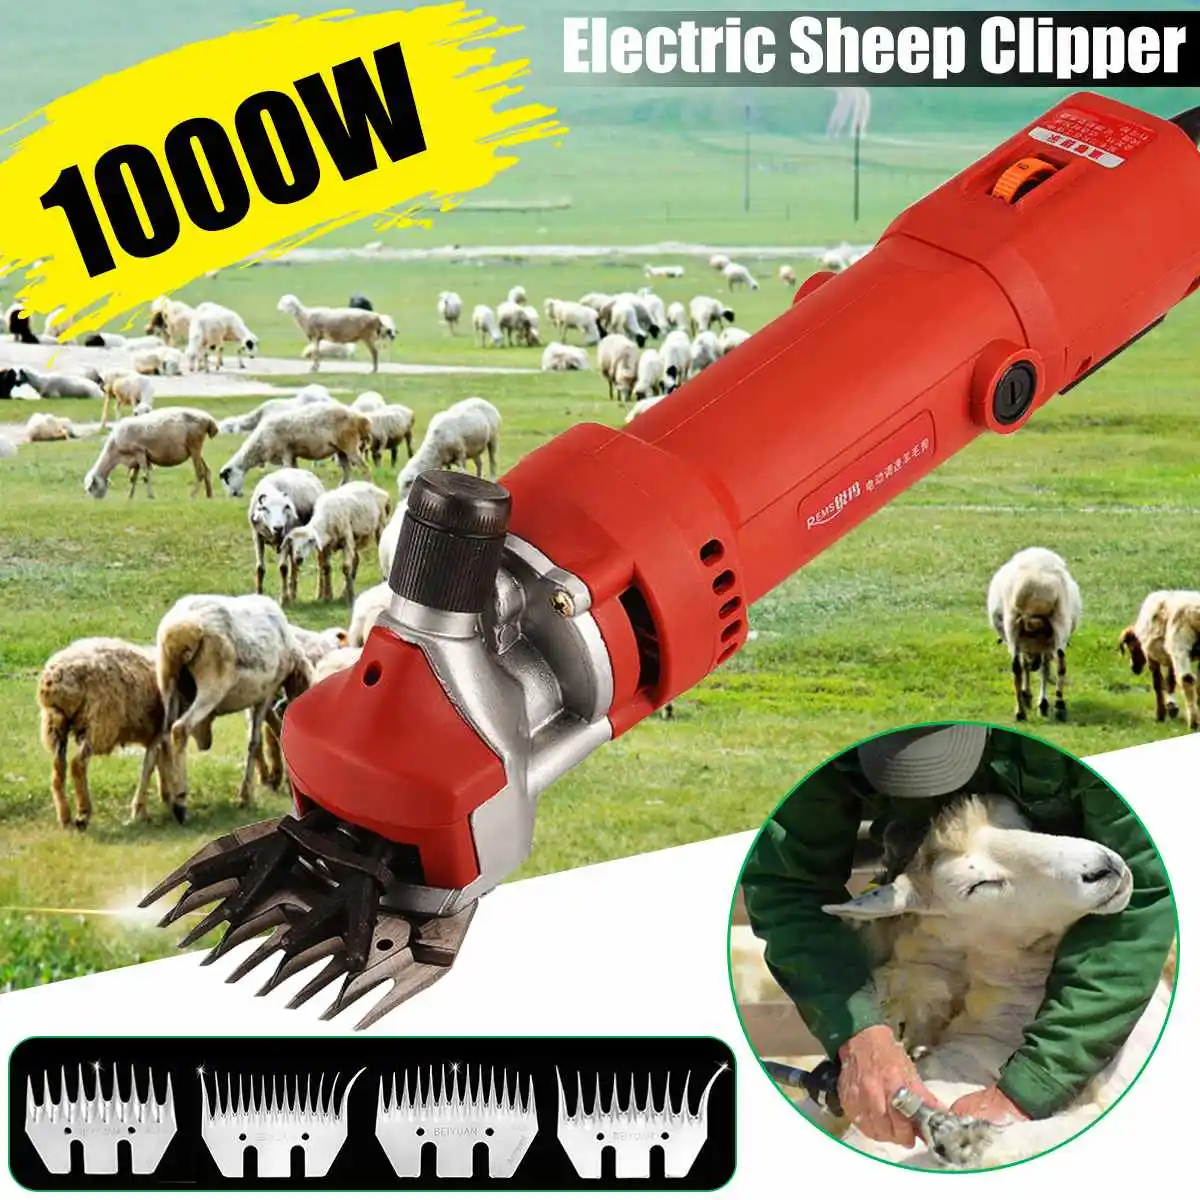 1000 Вт, 9 т/13 т, электрическая машинка для стрижки овец, ножницы для стрижки овец, изогнутые/прямые зубные лезвия, ножницы для шерсти домашних животных